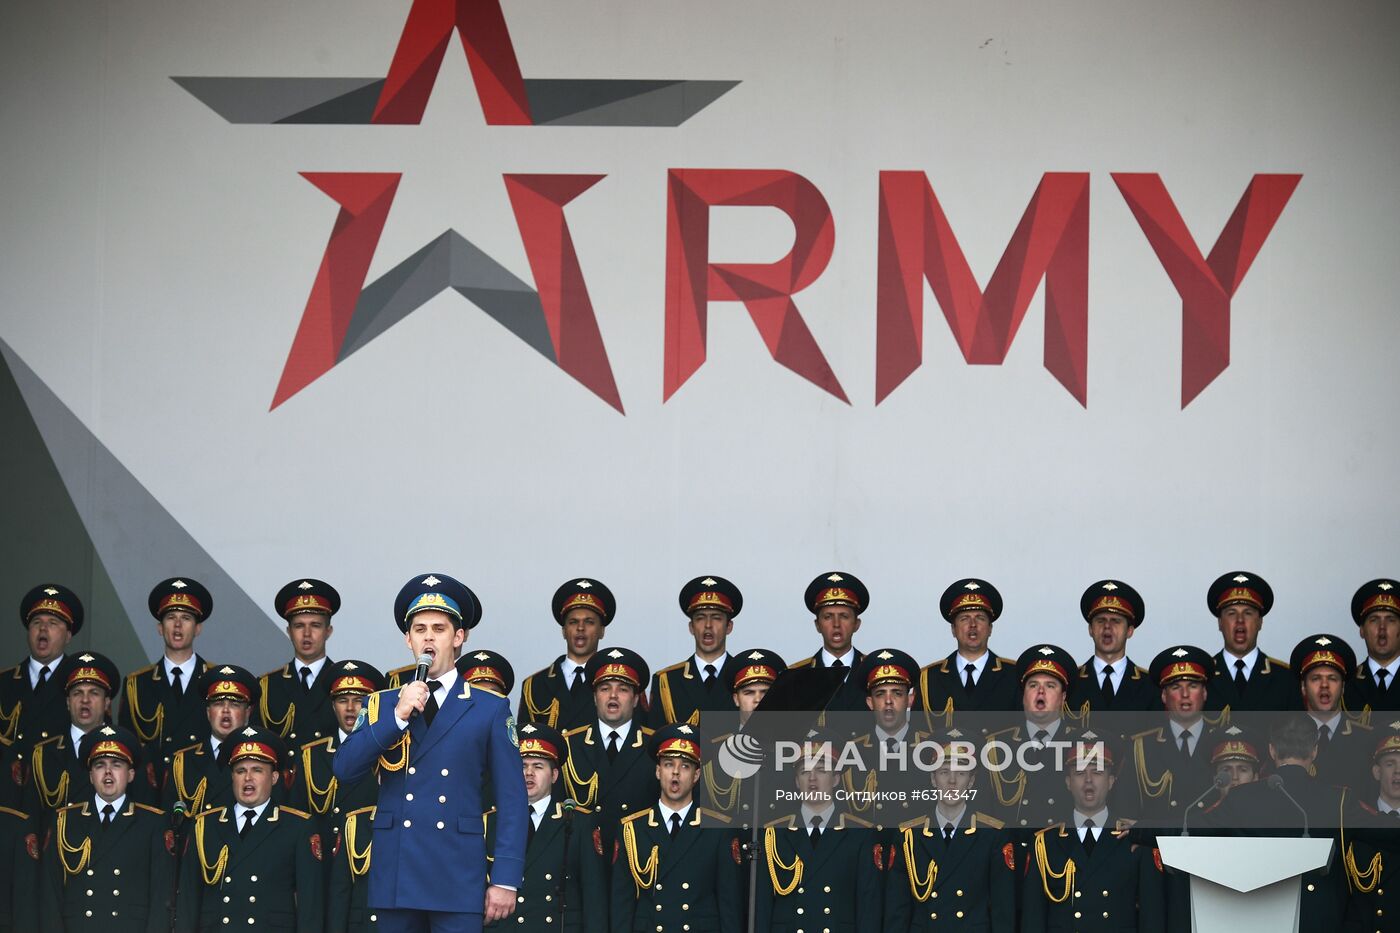 Открытие Международного военно-технического форума "Армия-2020"